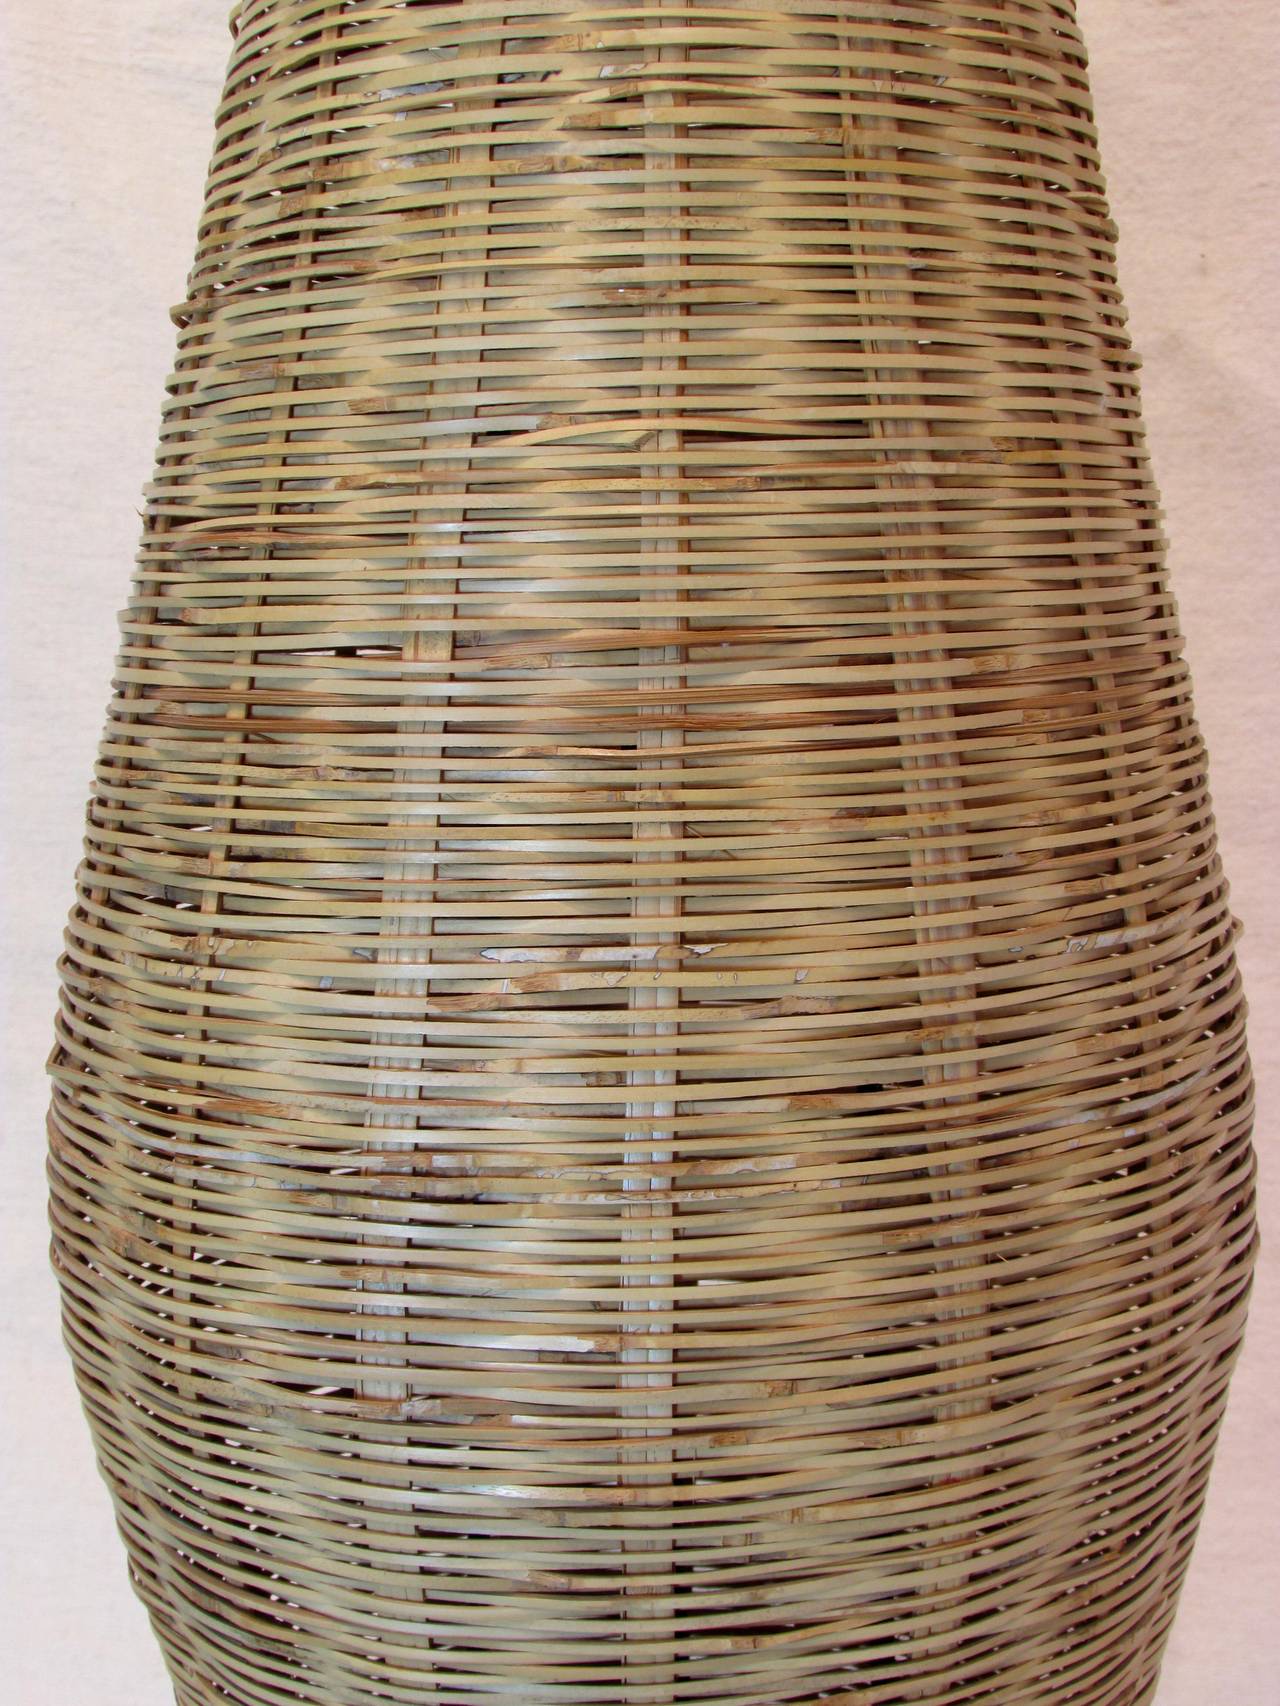 Ecuadorean Oblong Wicker Lamp